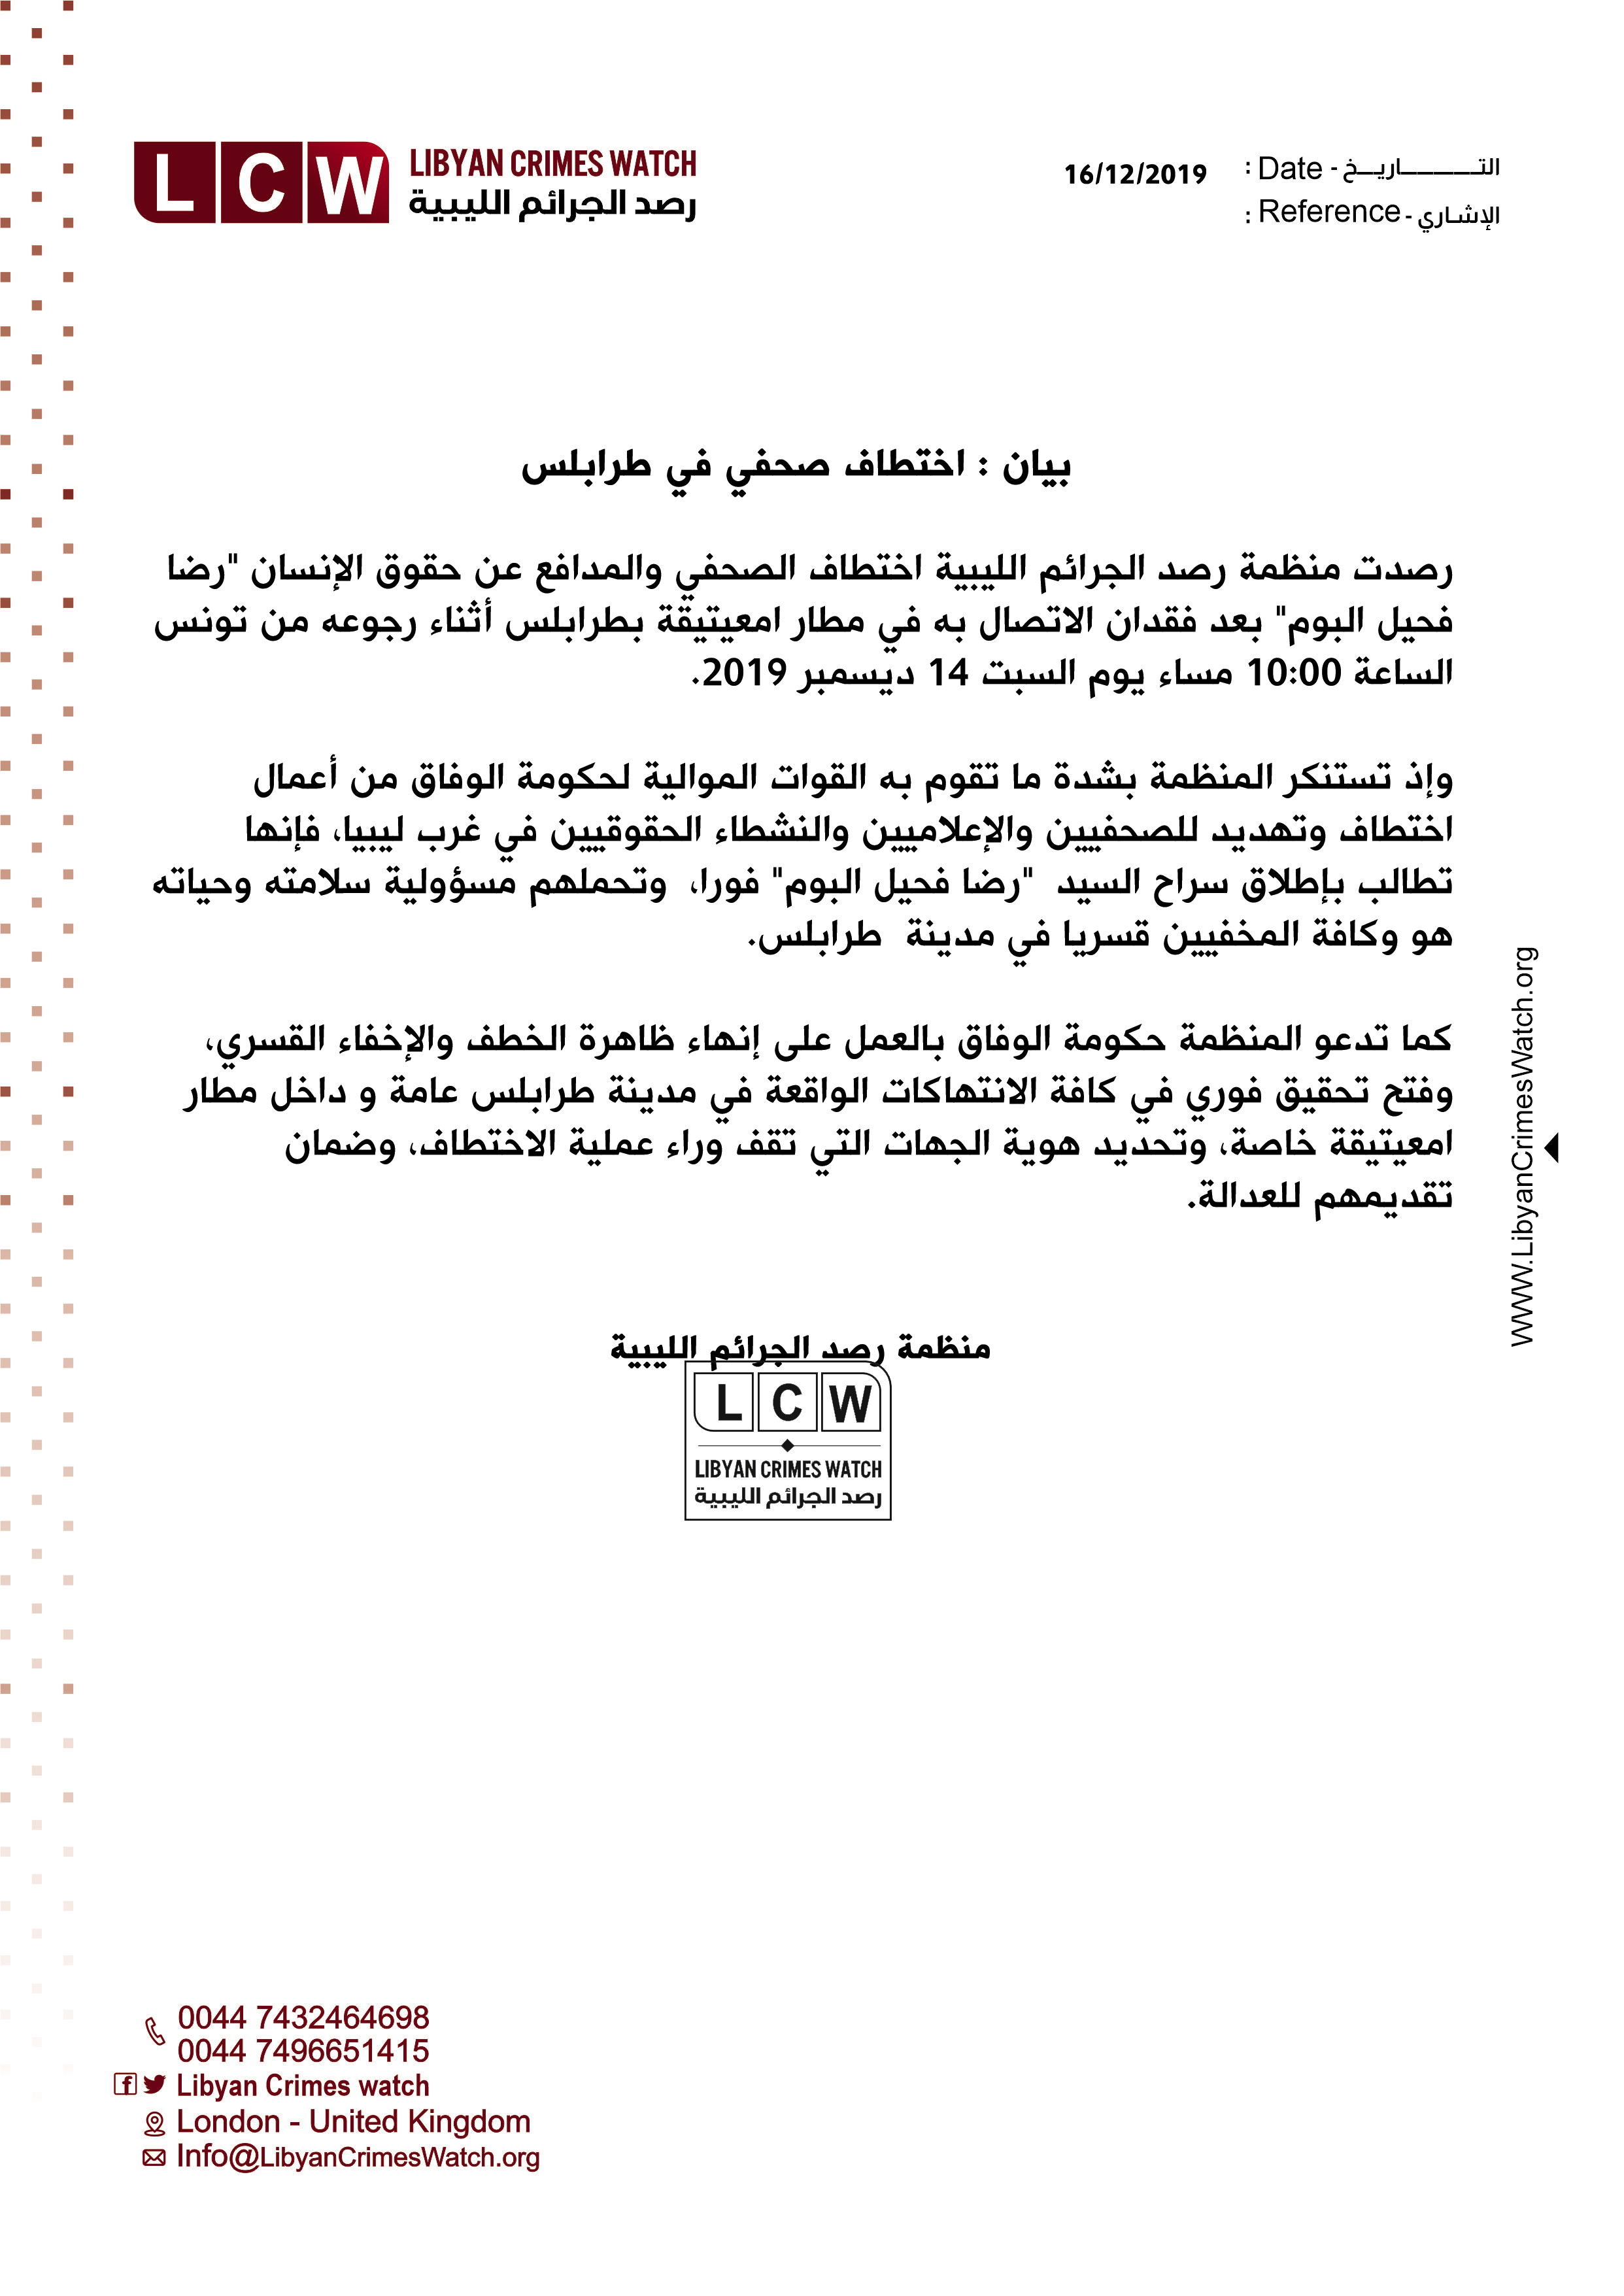  بيان : اختطاف صحفي في طرابلس